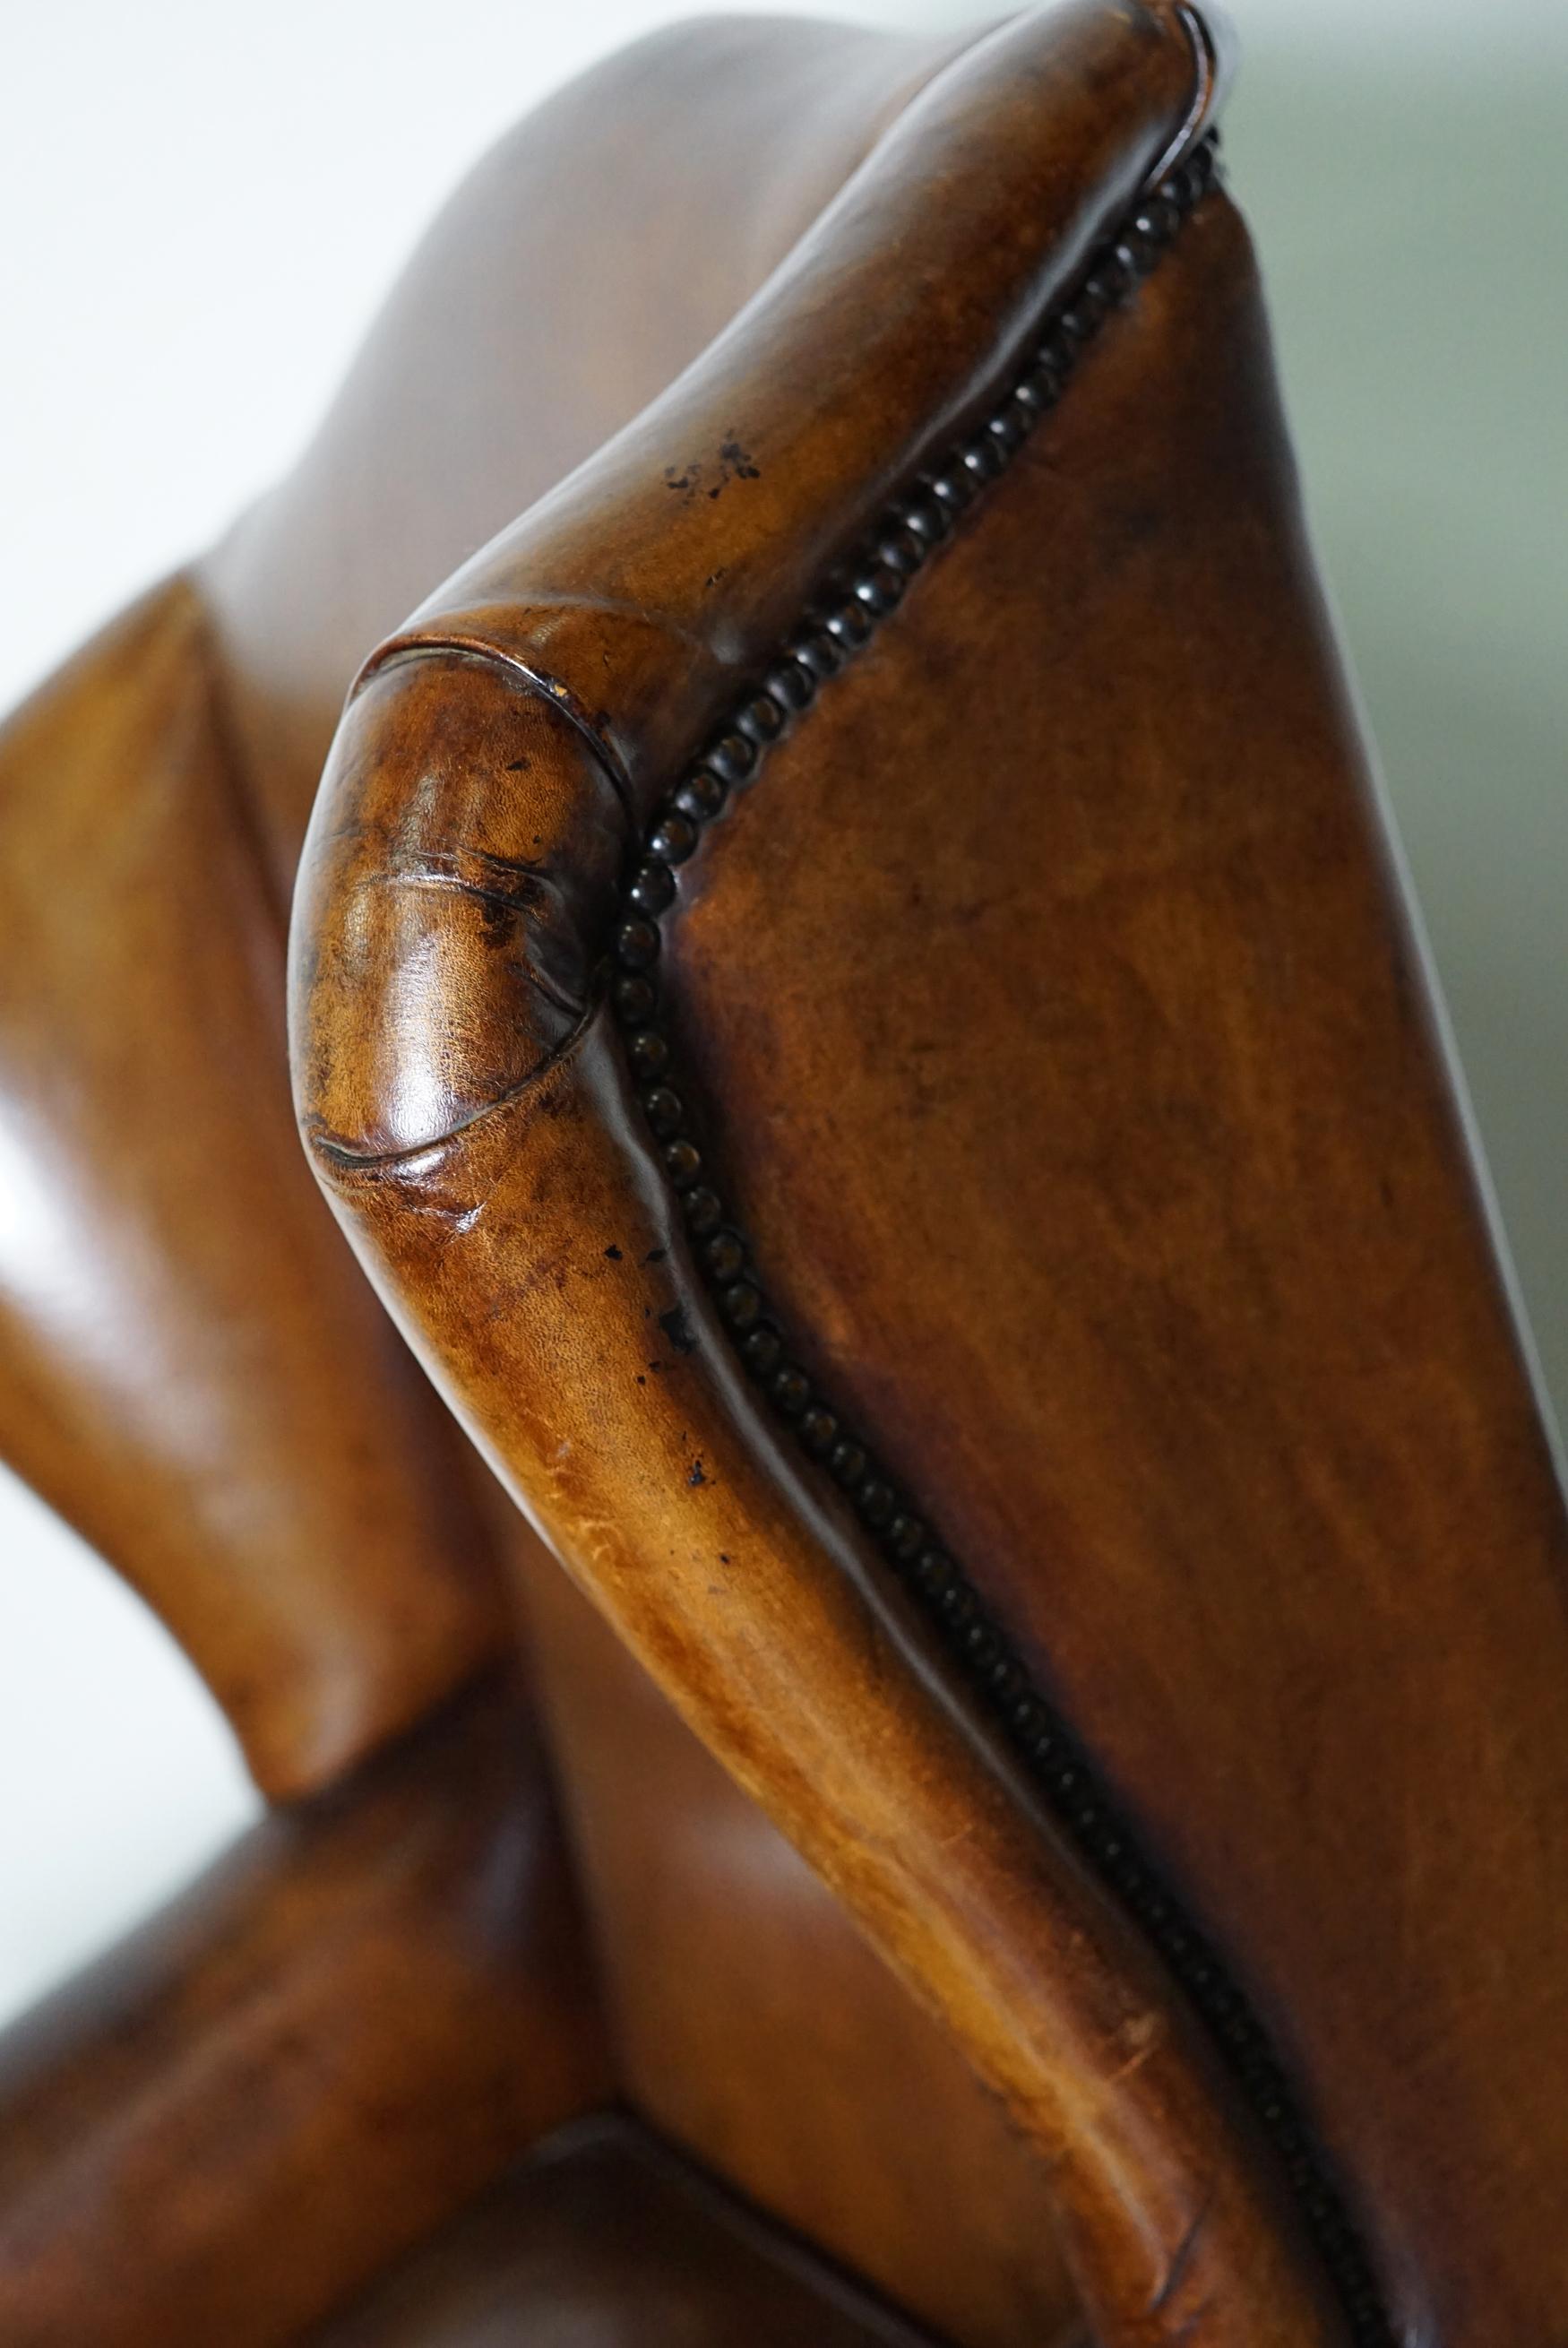 Vintage Dutch Cognac-Colored Leather Club Chair 9